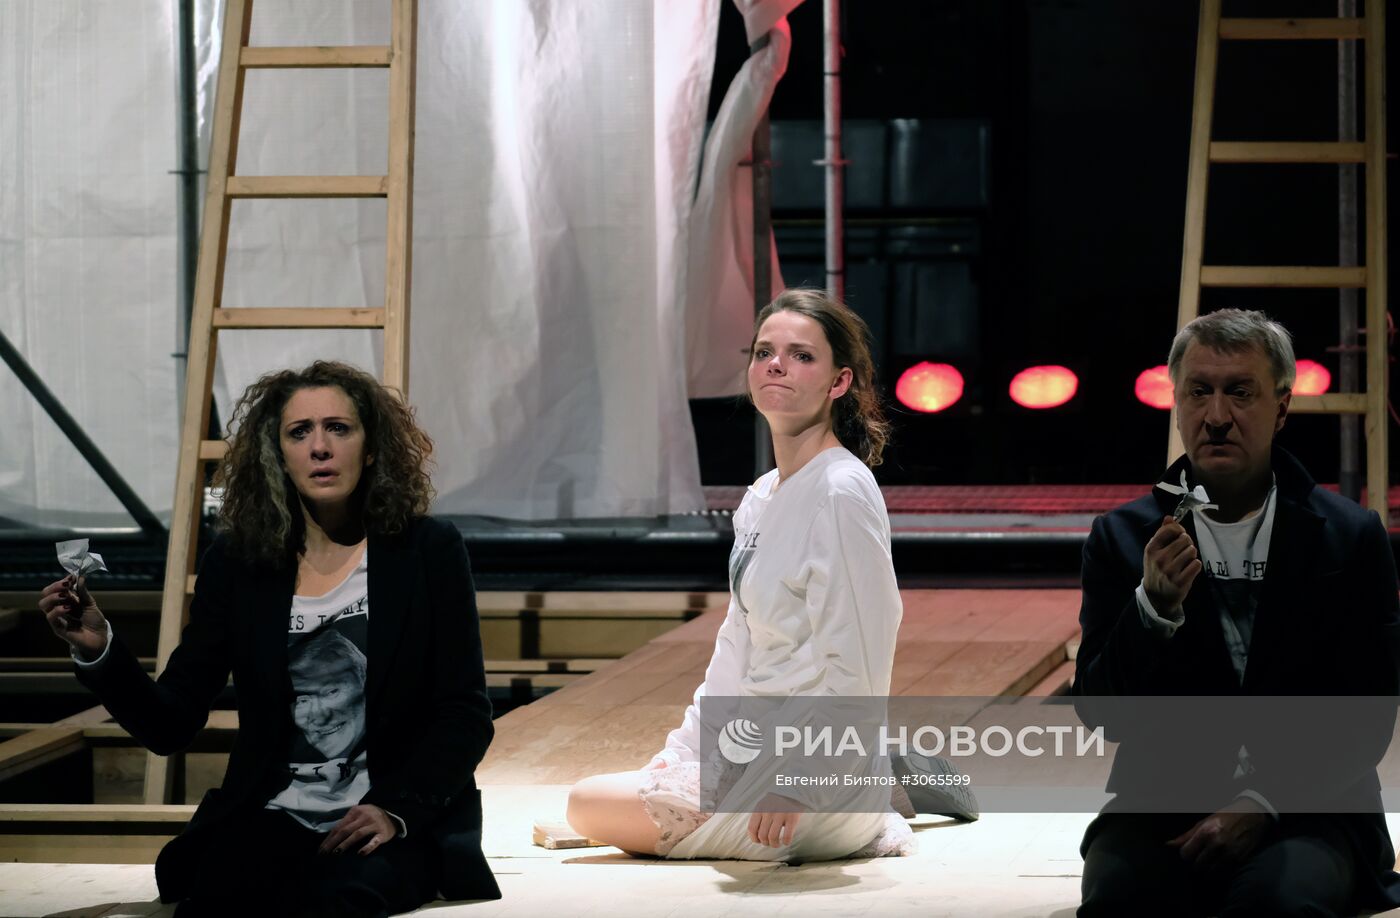 Прогон спектакля "Гамлет" в рамках фестиваля "Золотая Маска"